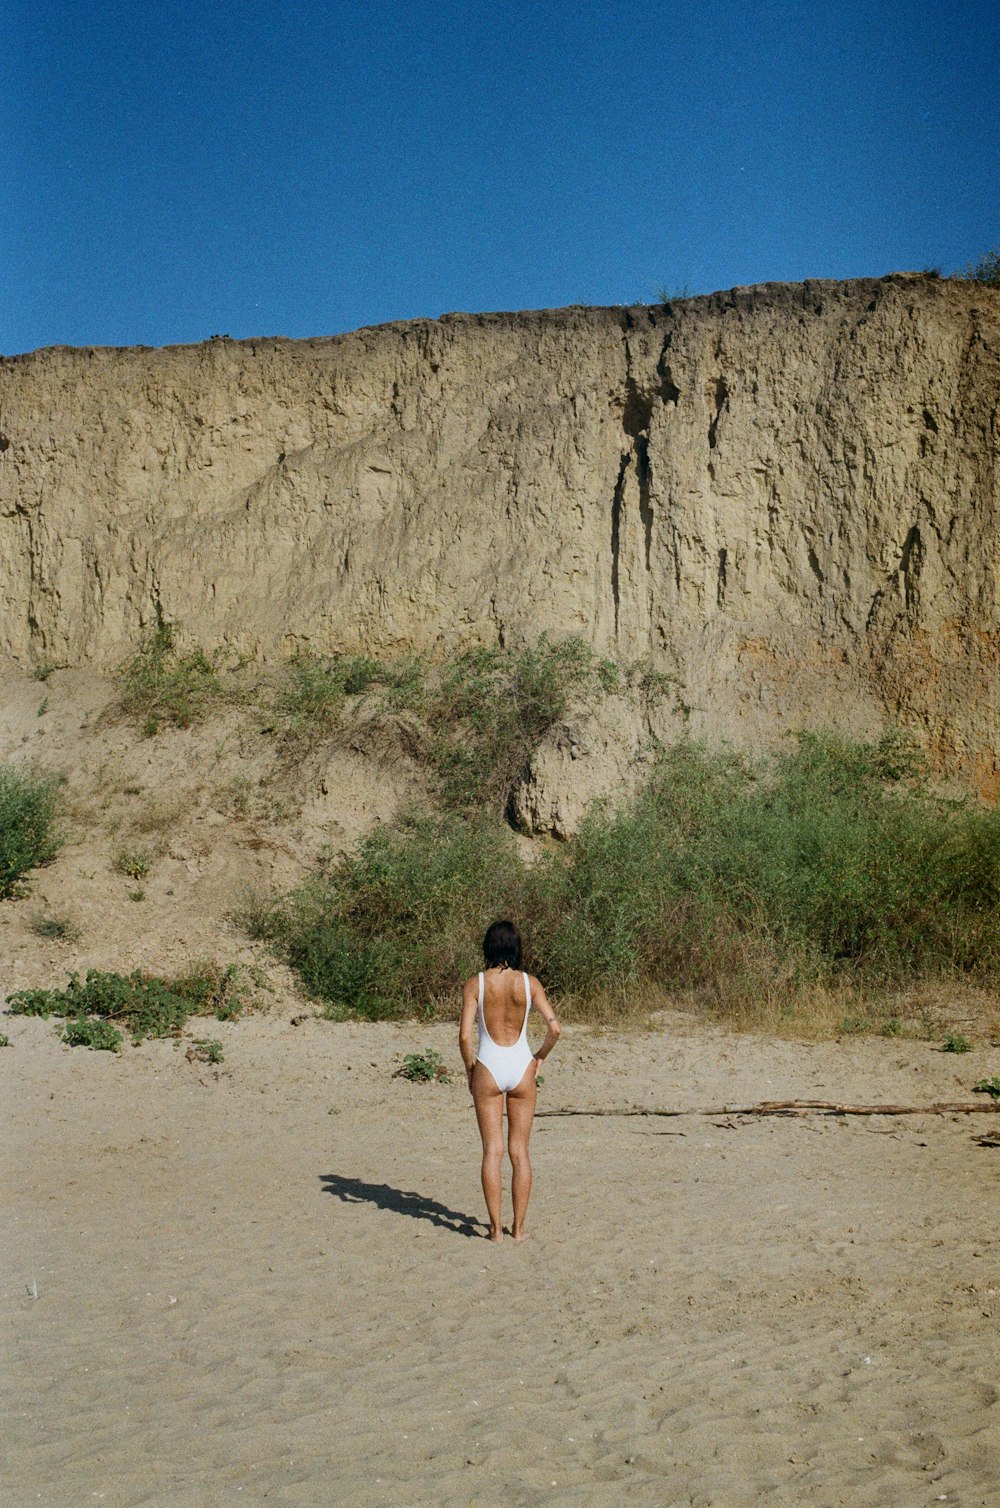 uma mulher em um traje de banho que anda em uma praia